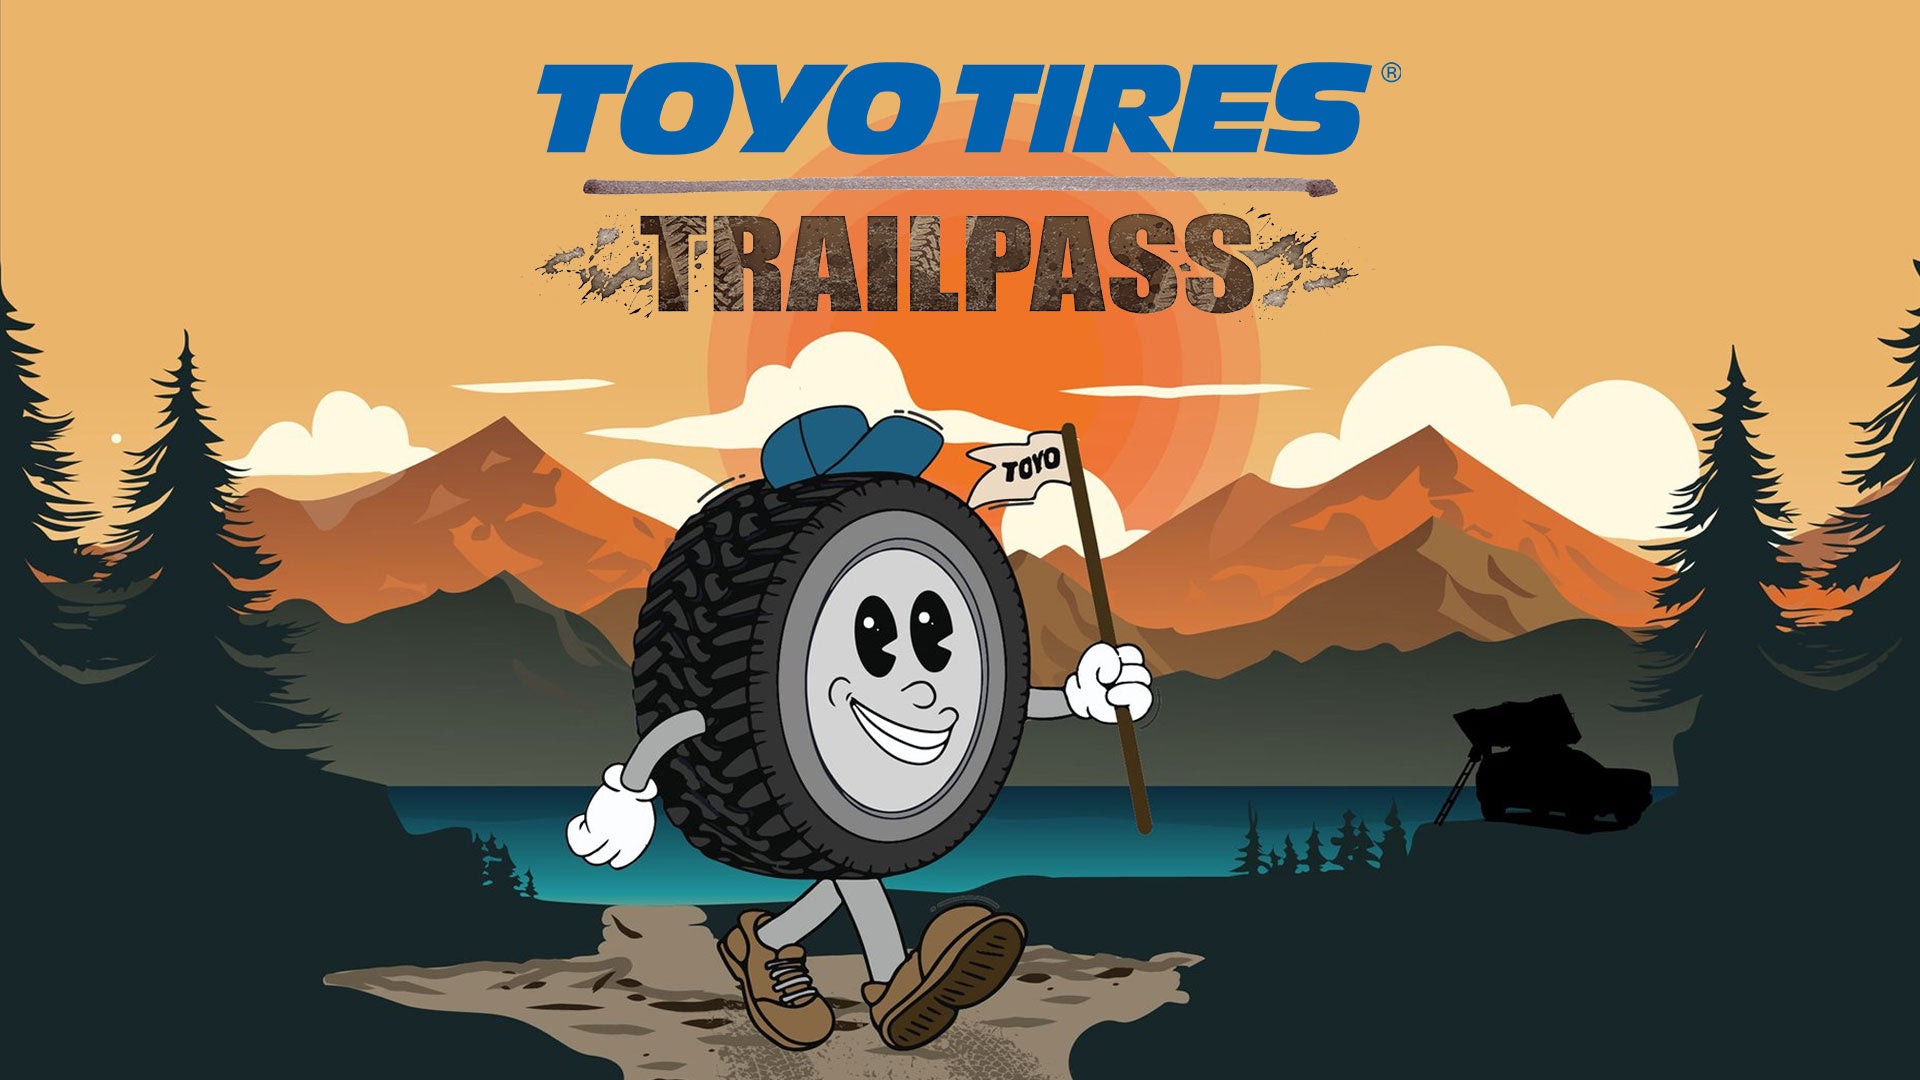 Toyo tires trailpass